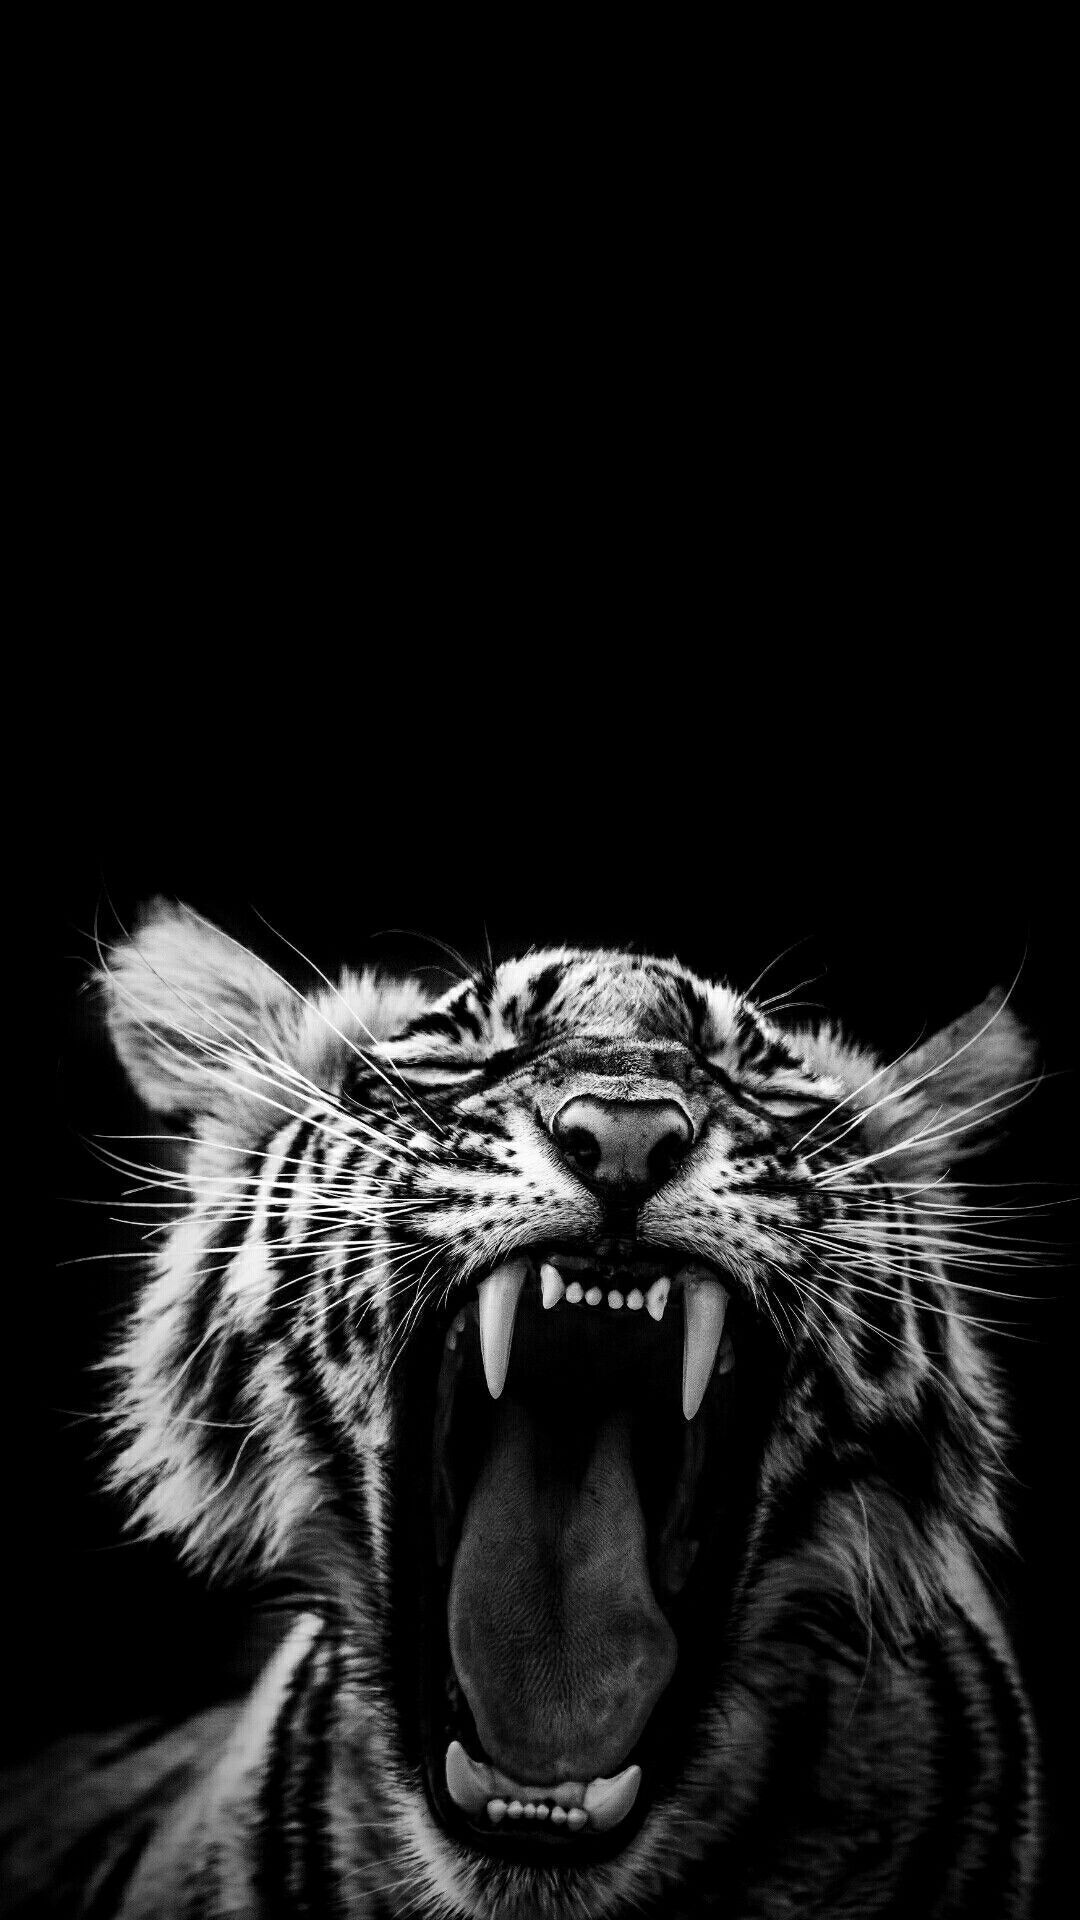  Weißer Tiger Hintergrundbild 1080x1920. TIGER DARK WALLPAPER. Wild animal wallpaper, Animal wallpaper, Tiger artwork